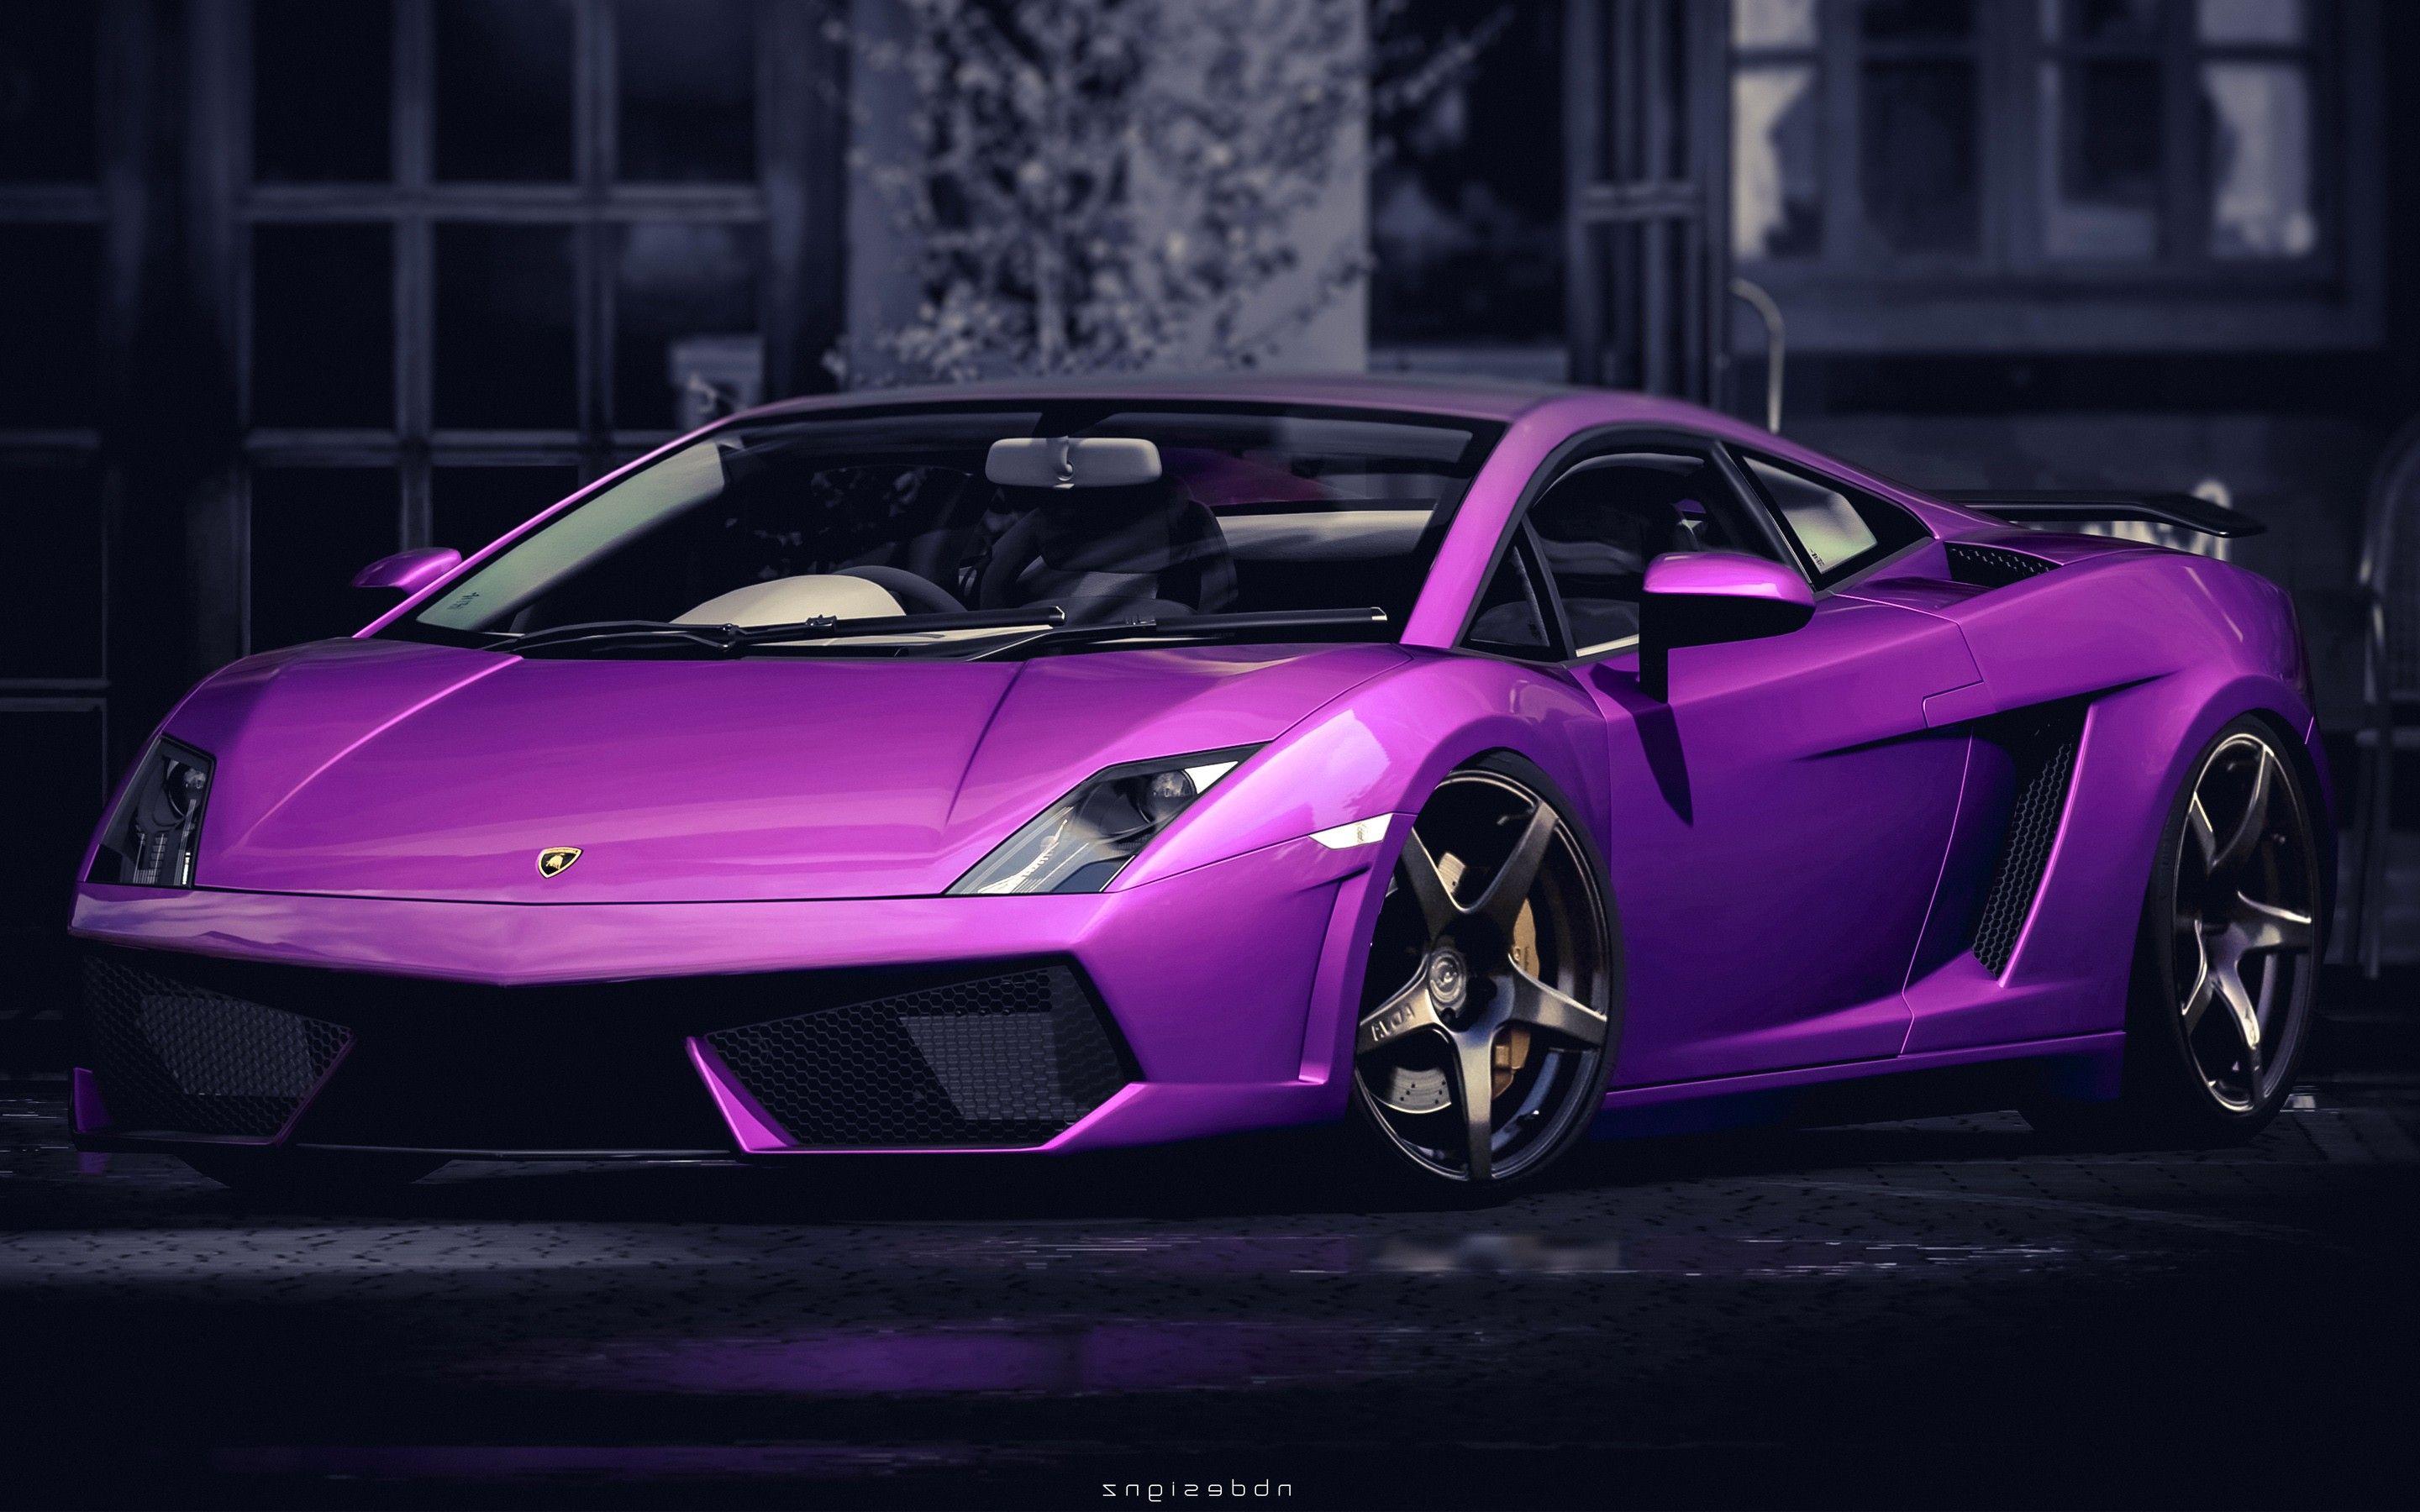 Best Lamborghini Wallpaper Google Images ~ Car Wallpaper